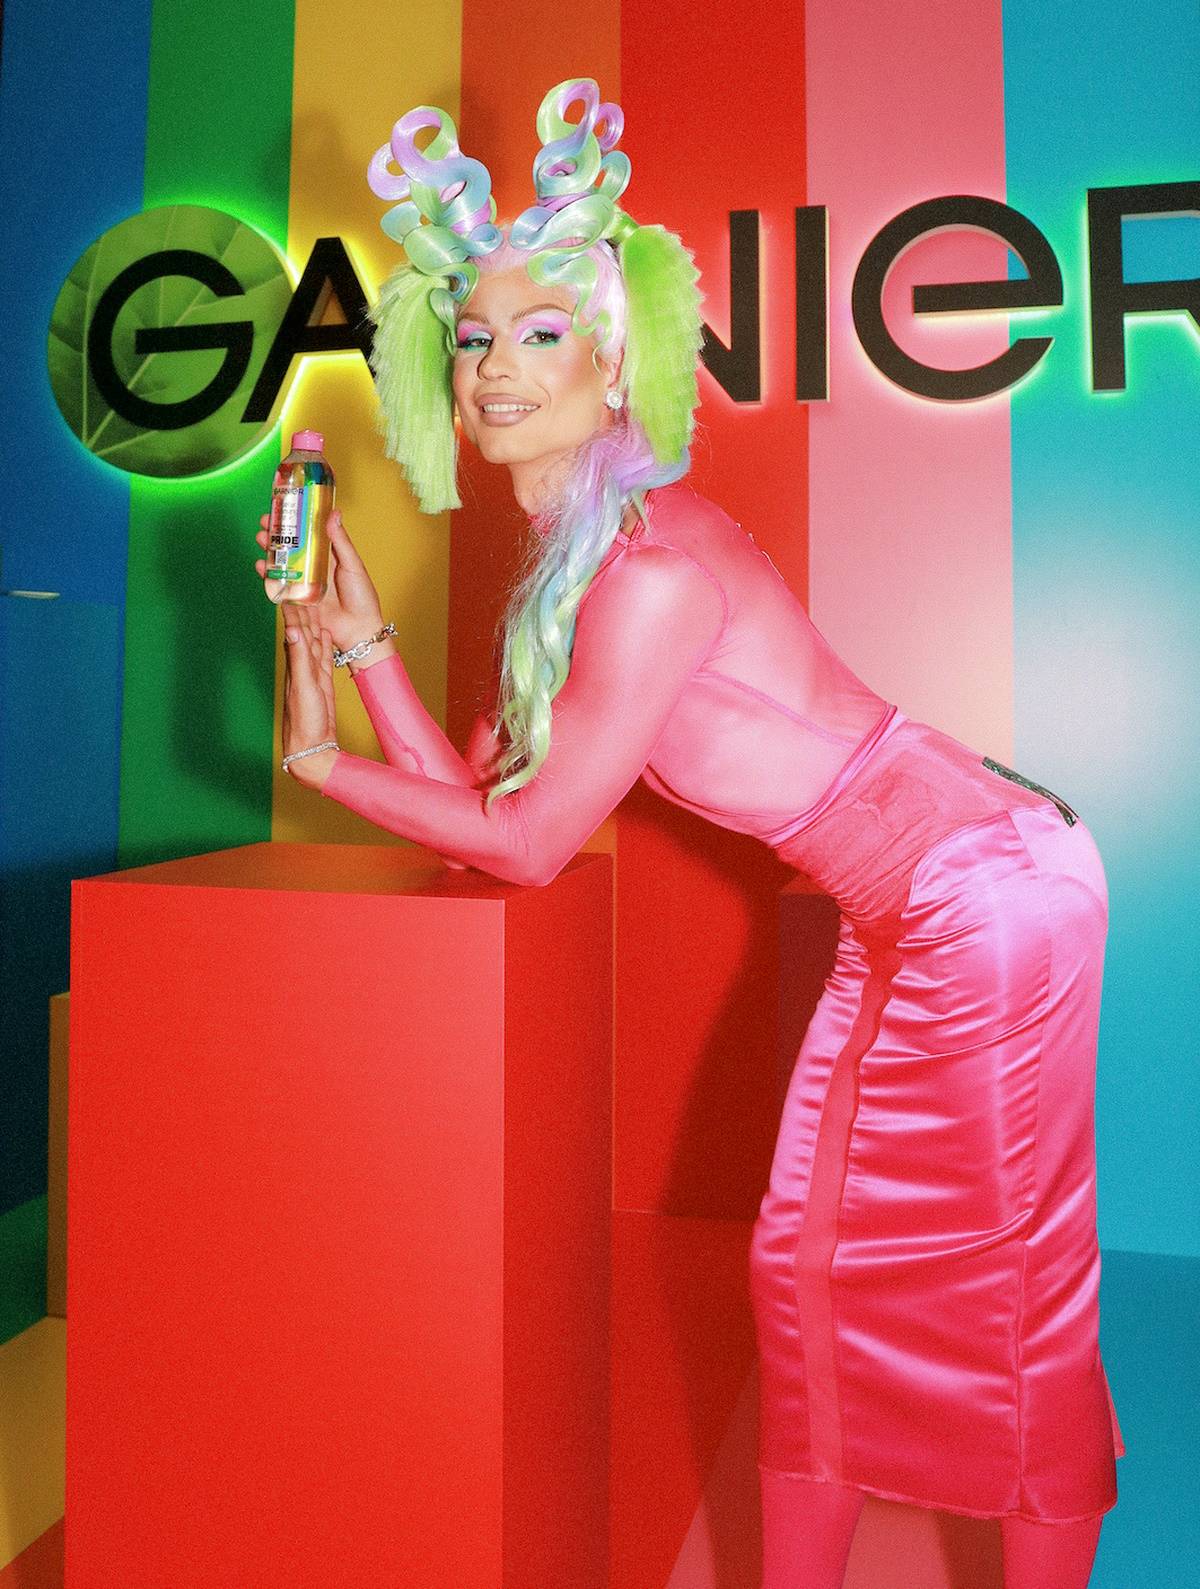 Płyn micelarny Pink Garnier jest na rynku od 10 lat. Kultowy płyn micelarny marki Garnier obchodzi w tym roku 10. urodziny.